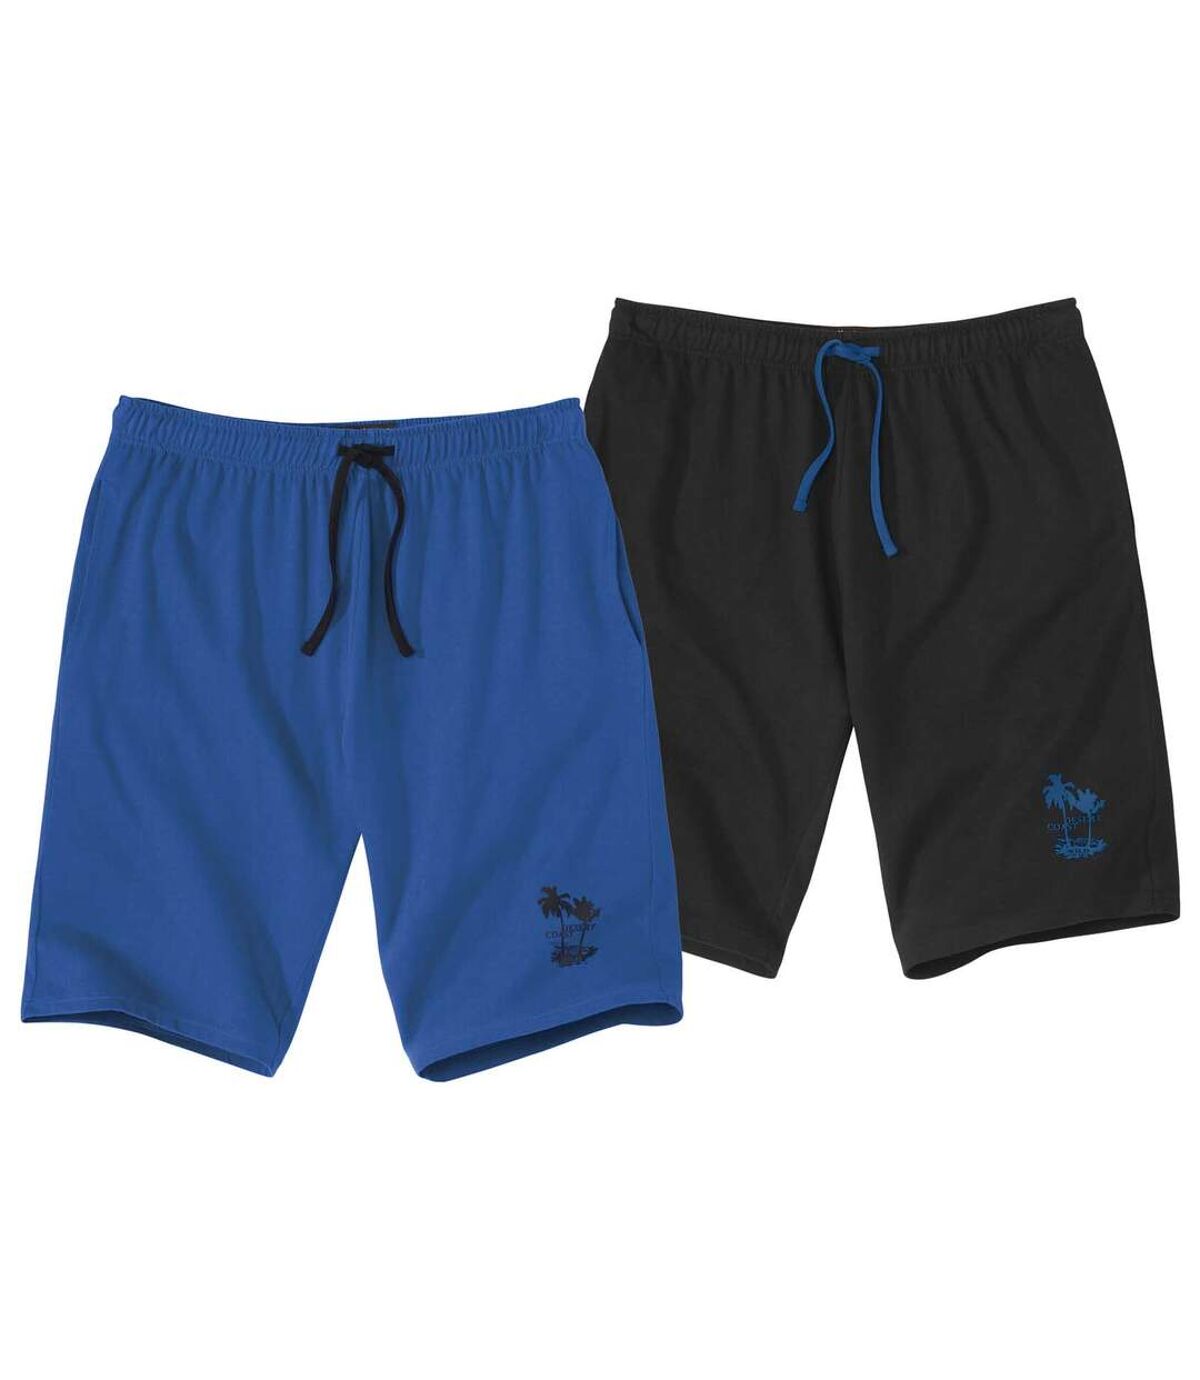 Pack of 2 Men's Sporty Shorts - Blue Black Atlas For Men